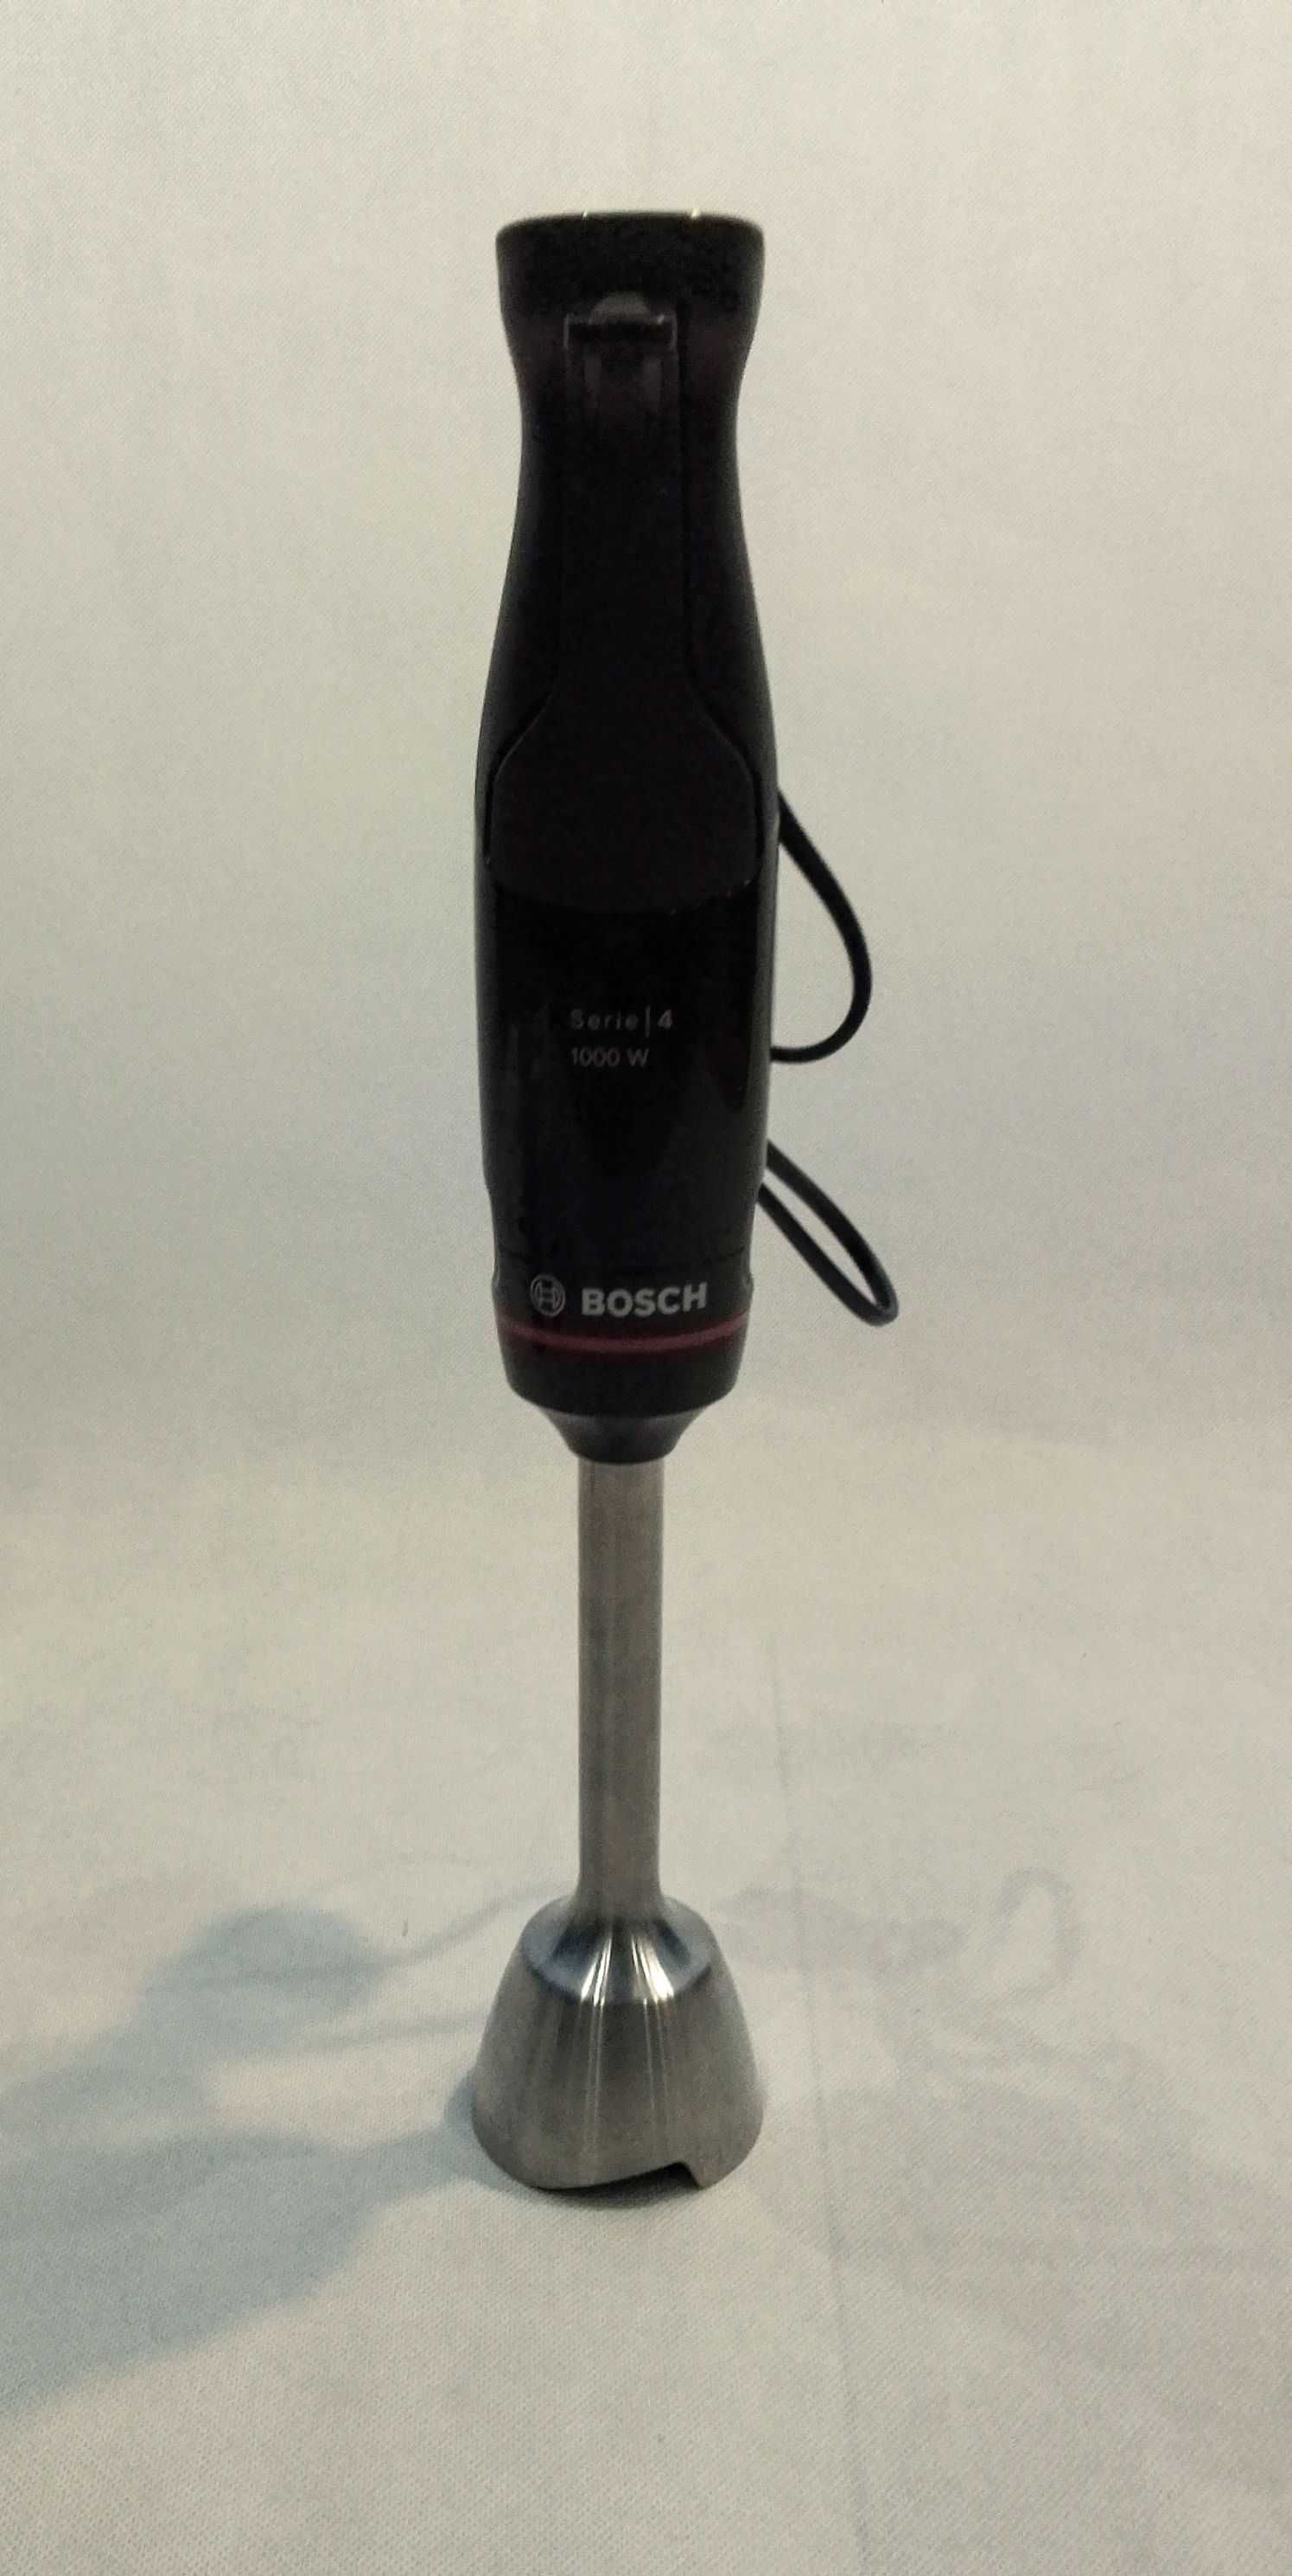 Blender Bosch ErgoMaster seria 4, 1000 W